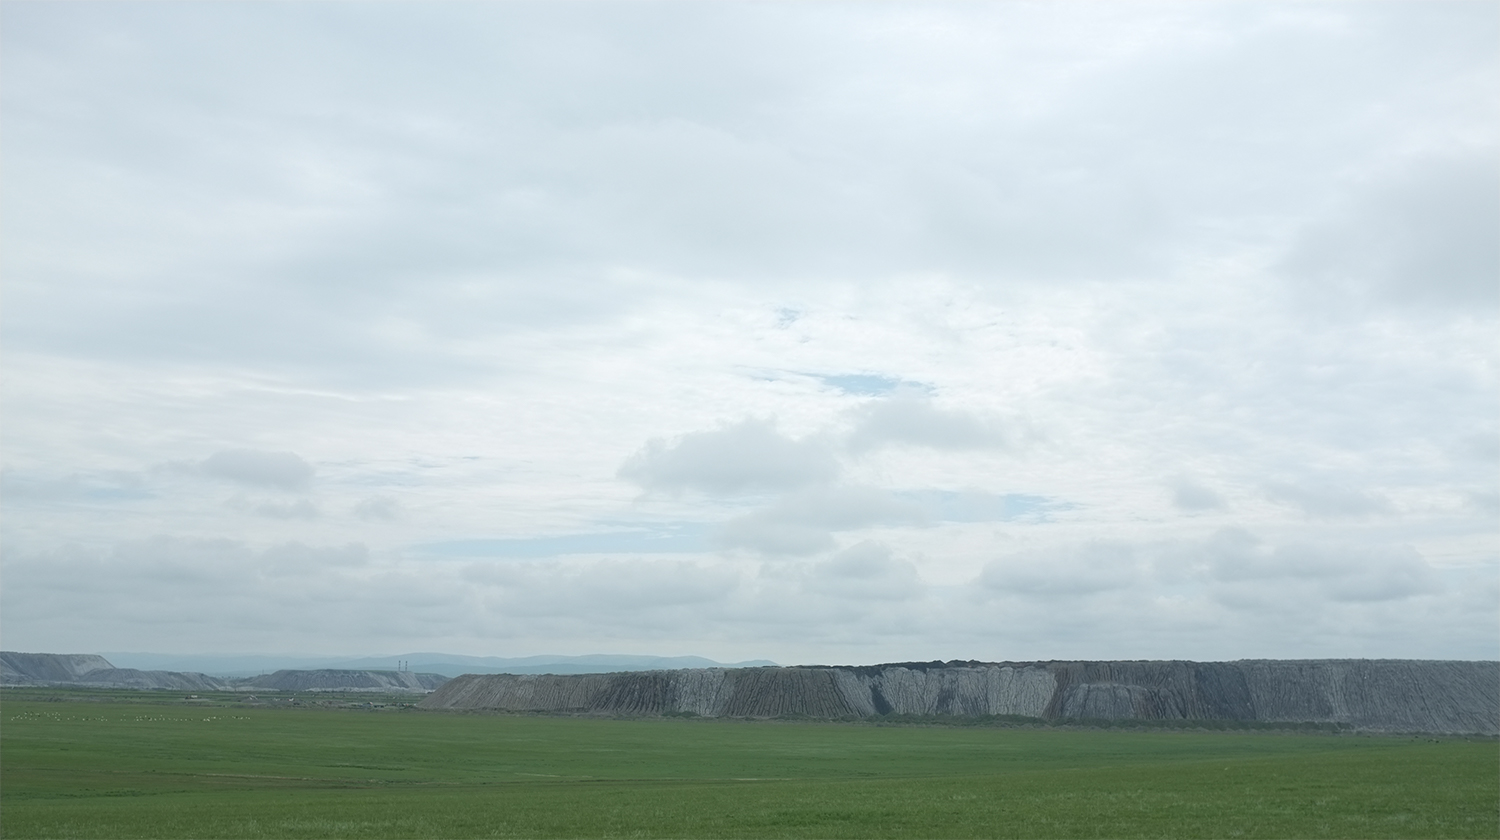  Chandgana Tal Coal Mine  Khentii Aimag, Mongolia 